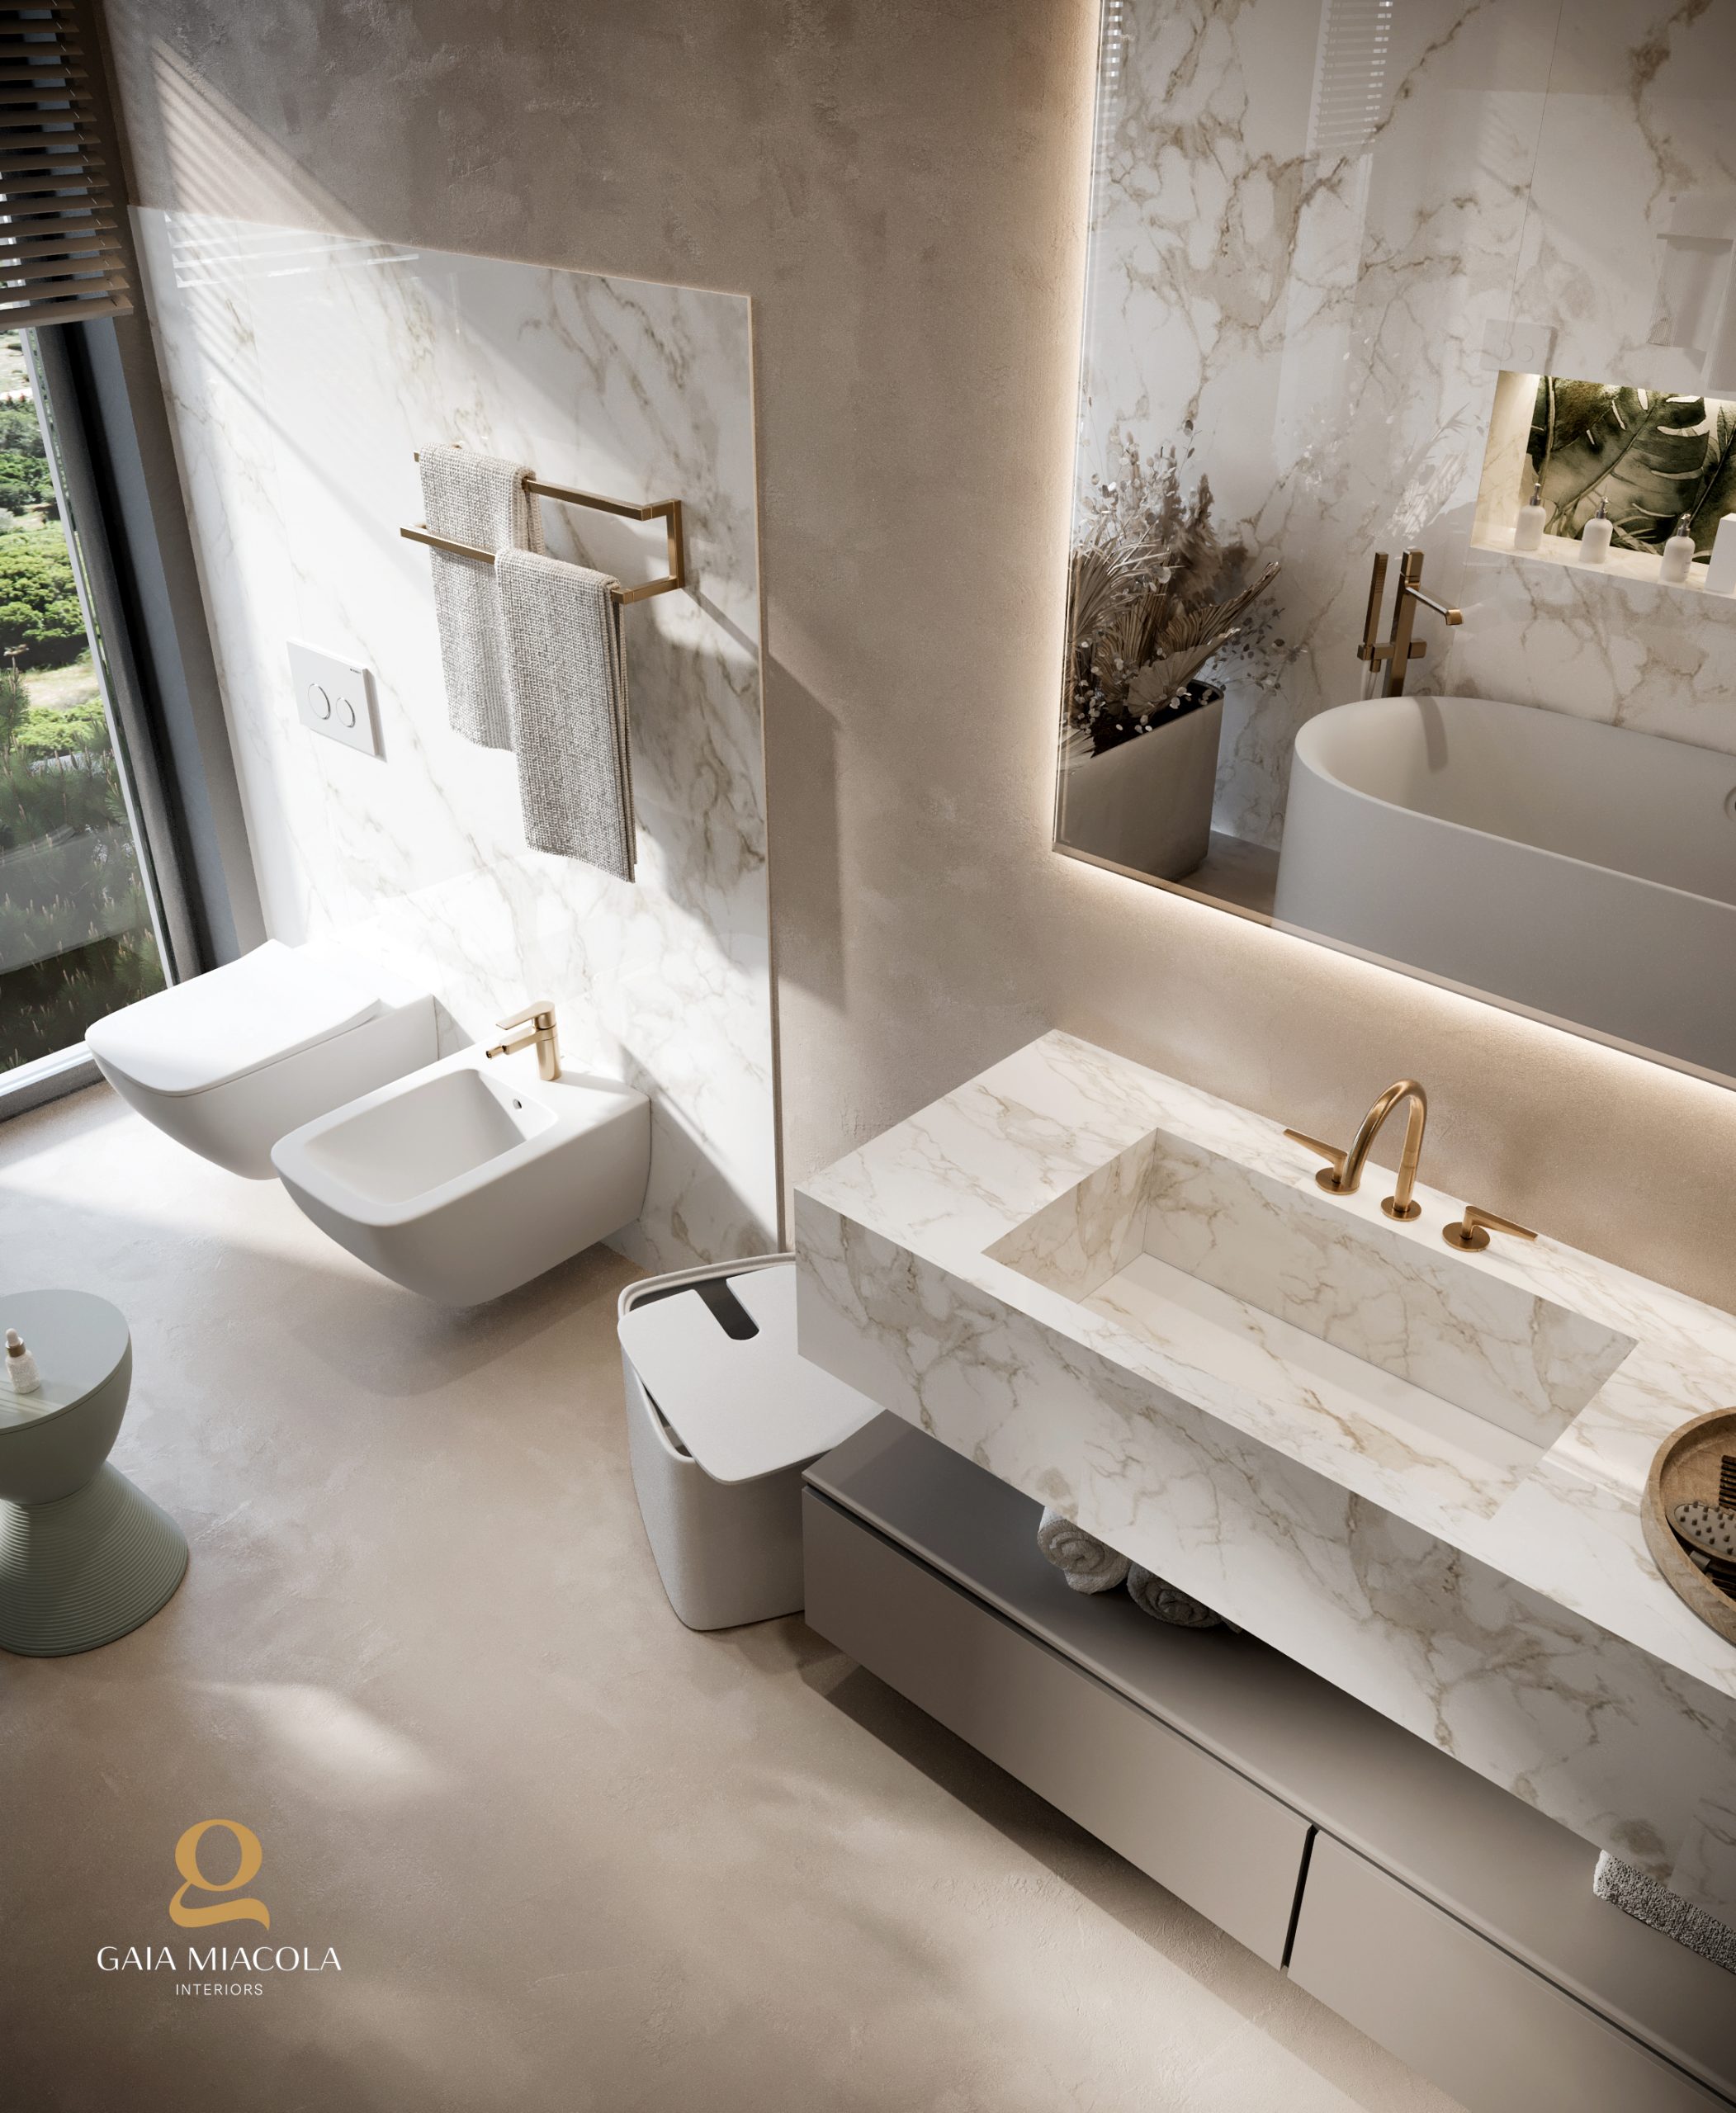 Crea la tua composizione di mobiletto personalizzato per arredare il tuo  bagno - Mobili Bagno - Arredo bagno - Prodotti - Ceramiche Artistiche  Bertolani SRL